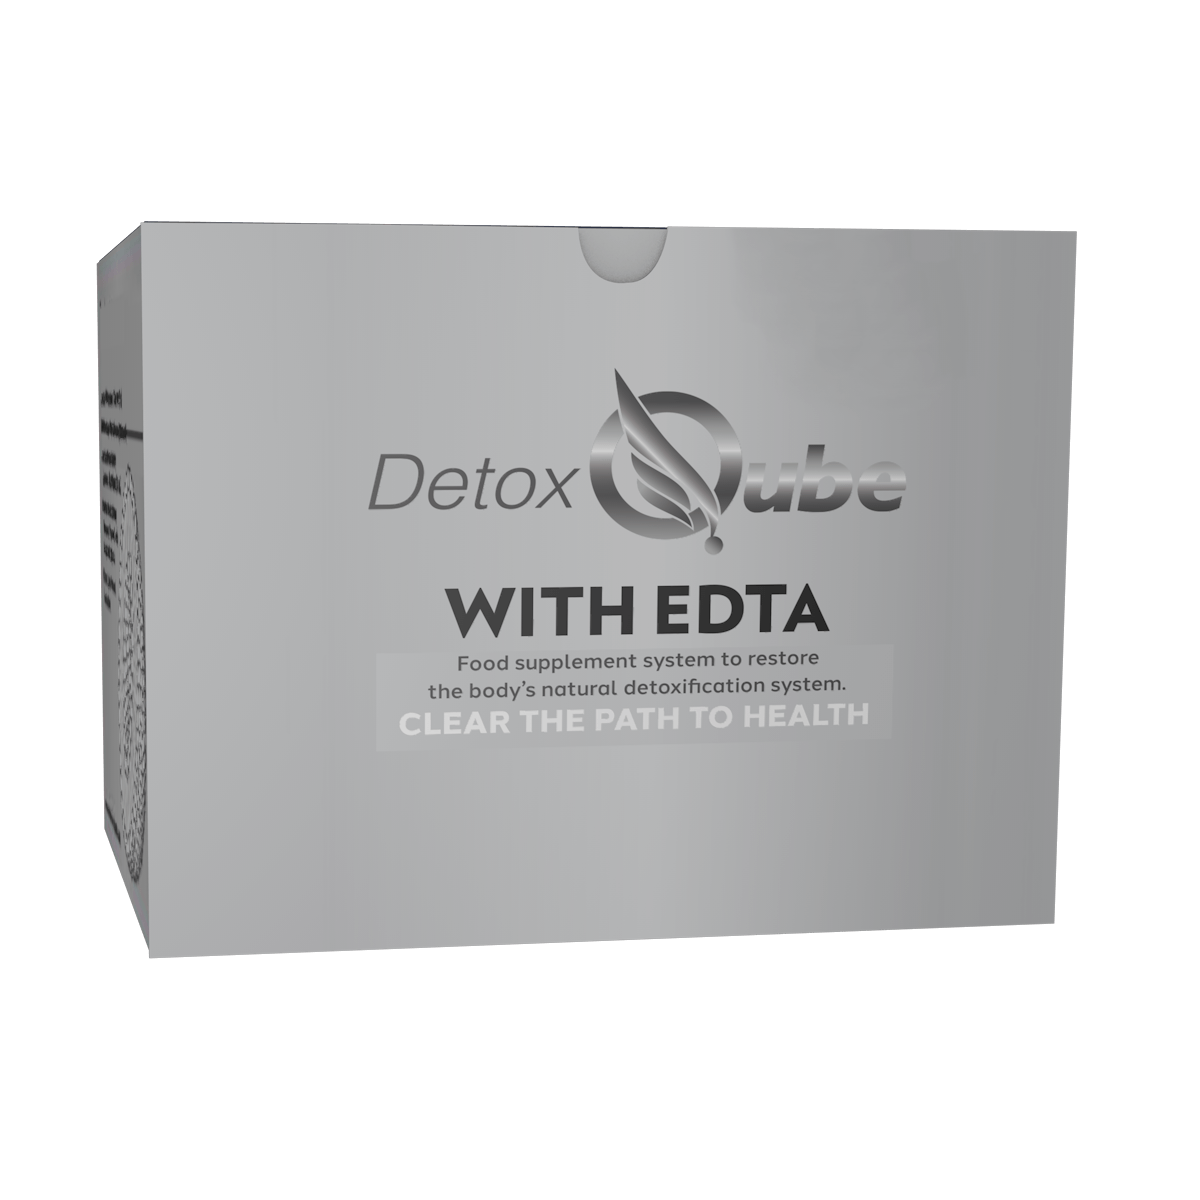 The Detox Qube® with EDTA